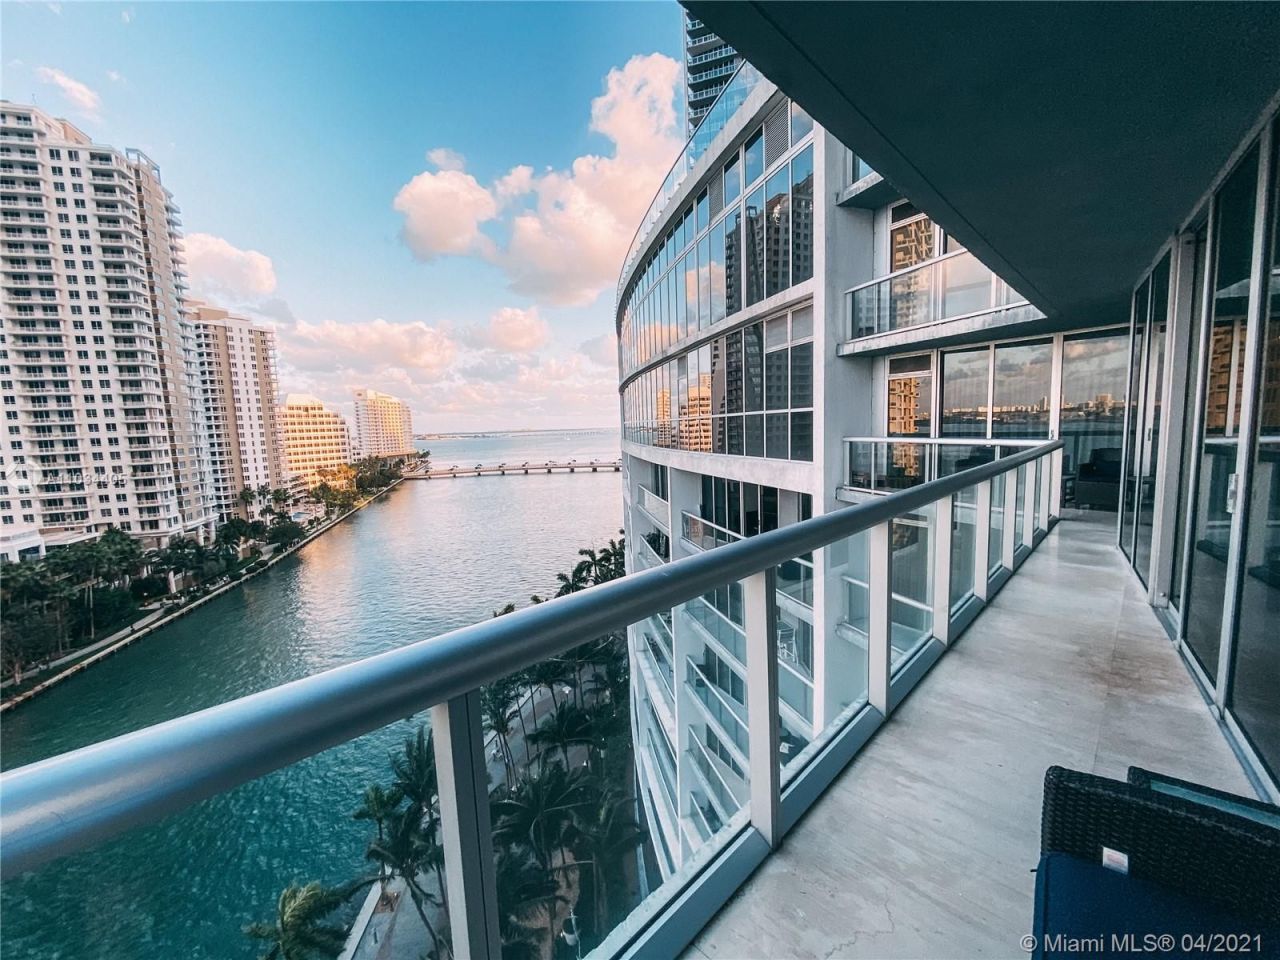 Flat in Miami, USA, 190 m² - picture 1